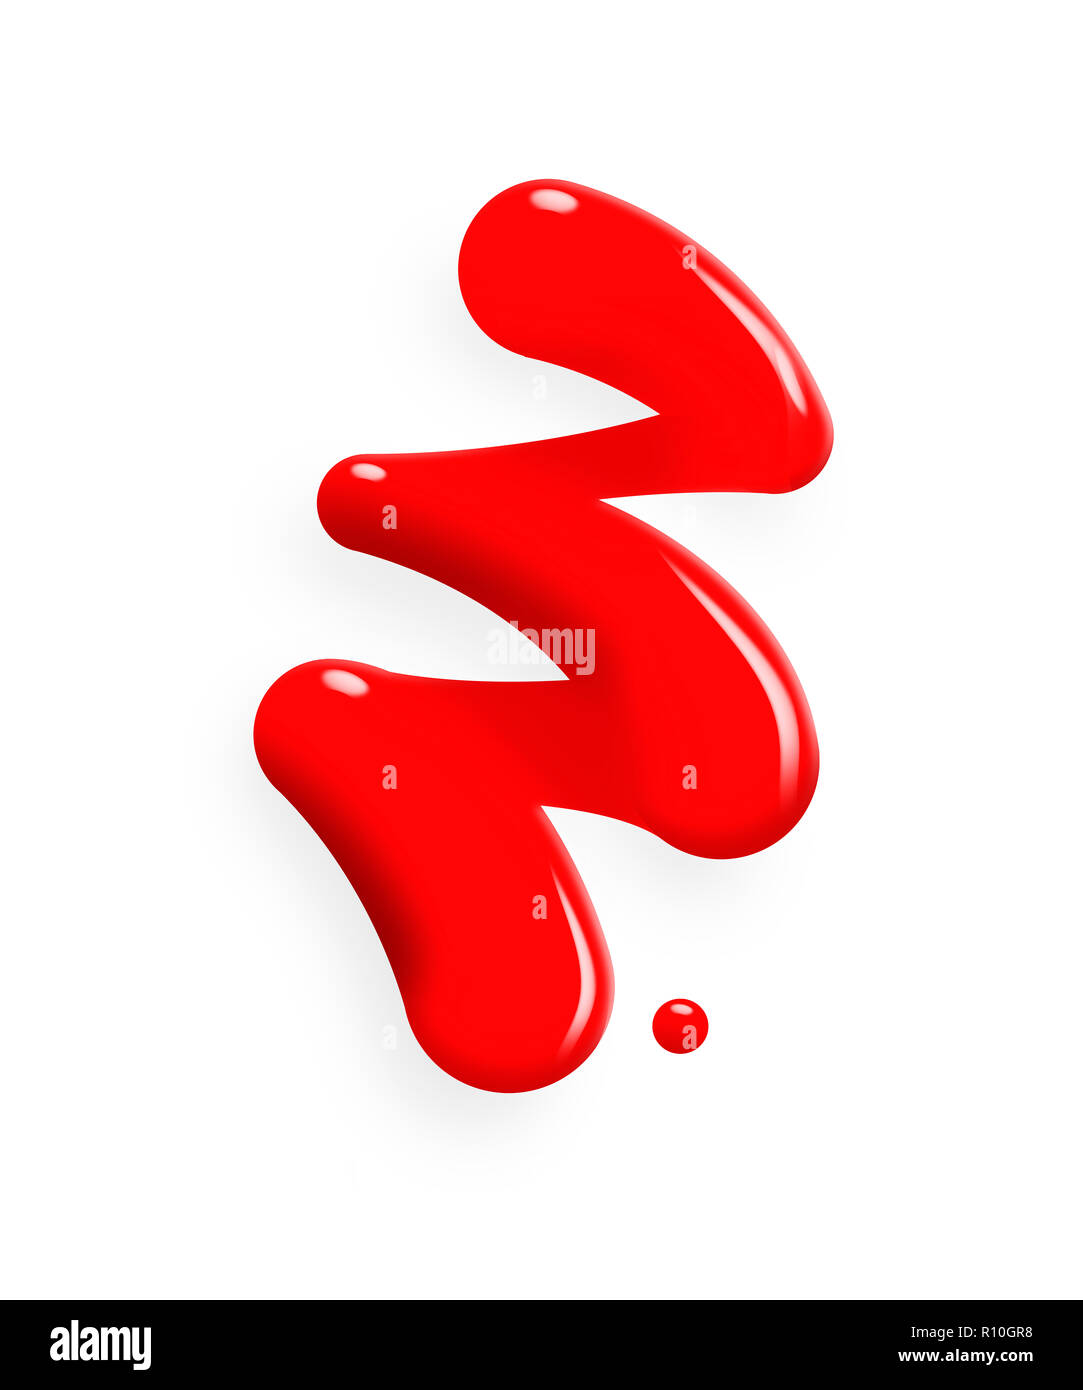 Imagen Digital de arrojó pintura roja en forma de zigzag sobre fondo blanco. Foto de stock